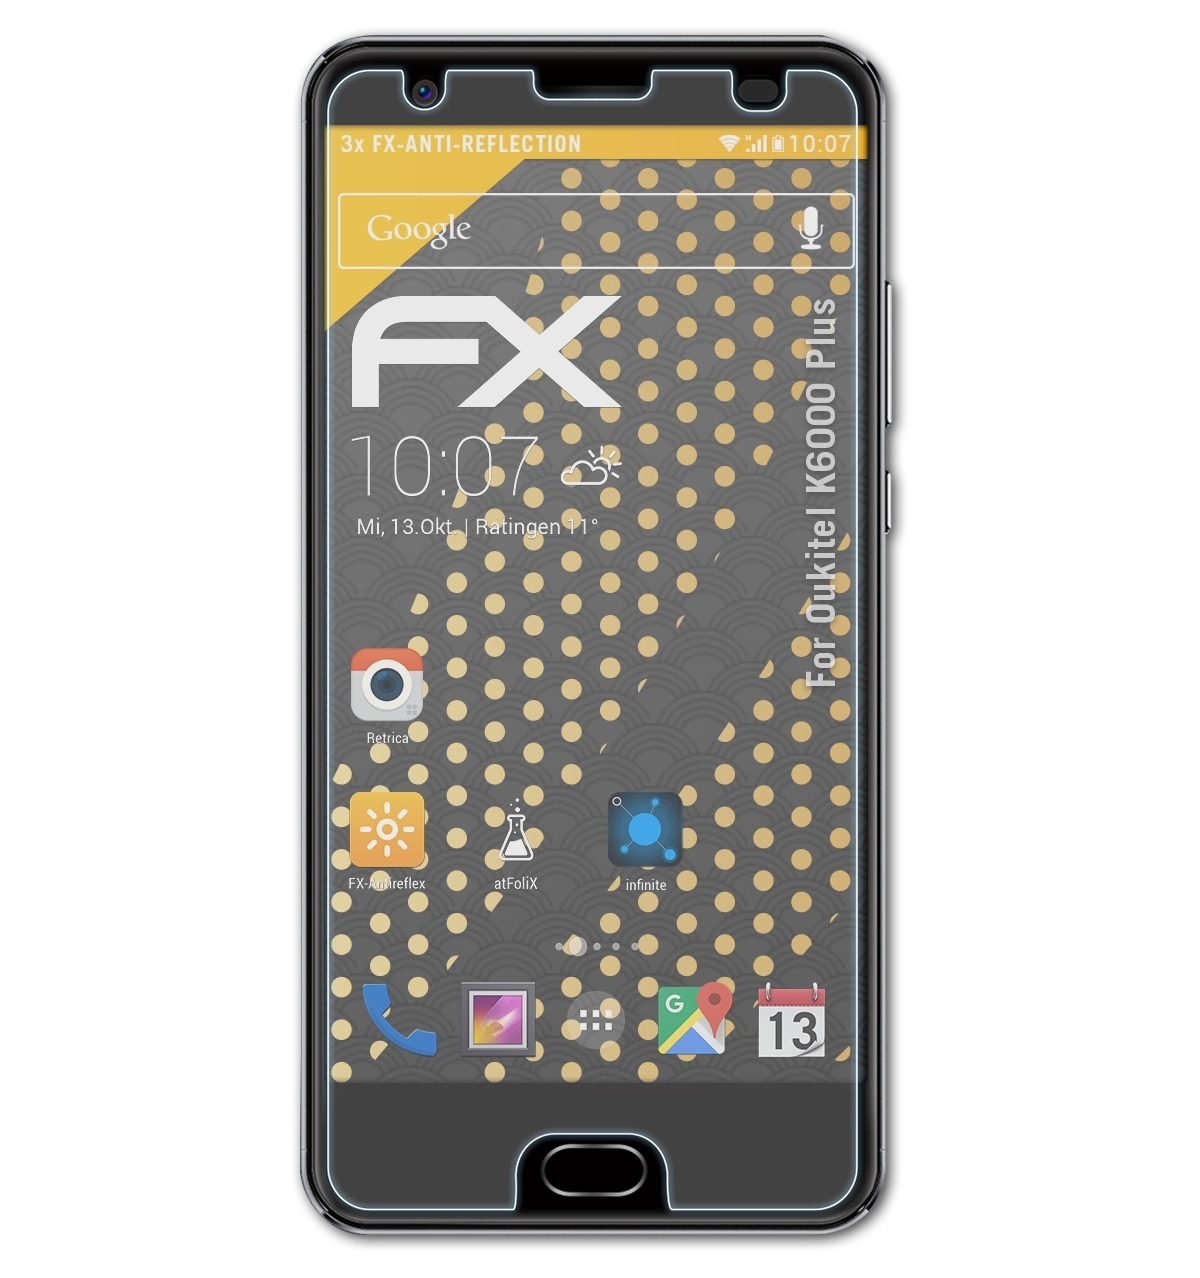 ATFOLIX K6000 Displayschutz(für Oukitel FX-Antireflex Plus) 3x